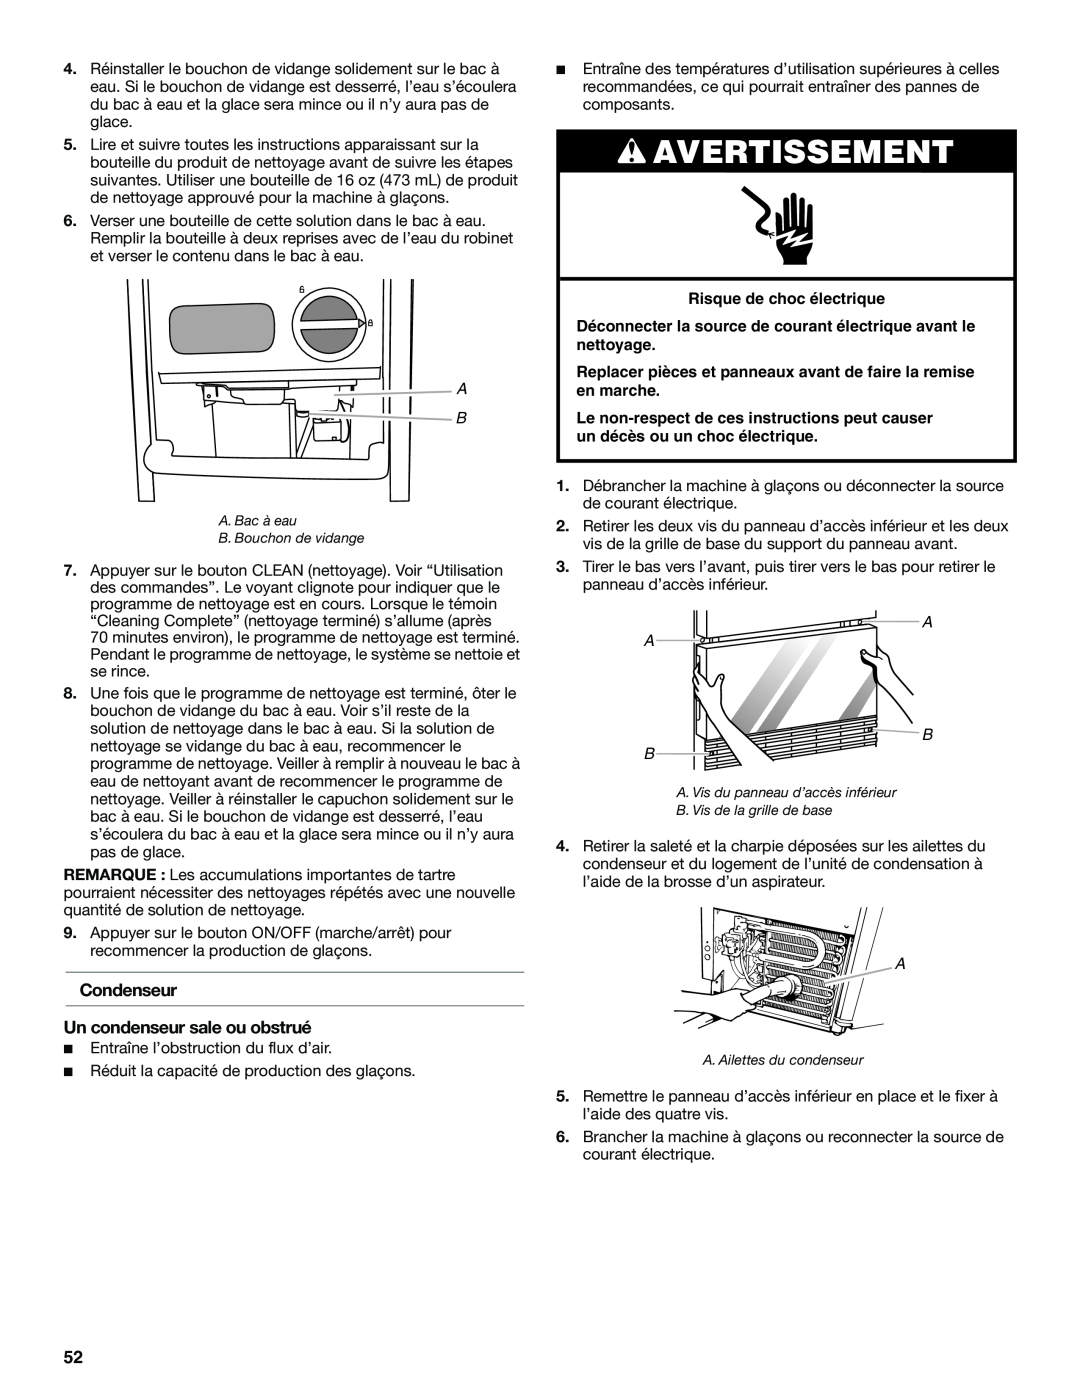 KitchenAid W10515677C manual Condenseur Un condenseur sale ou obstrué, Avertissement, Risque de choc électrique, A A B B 